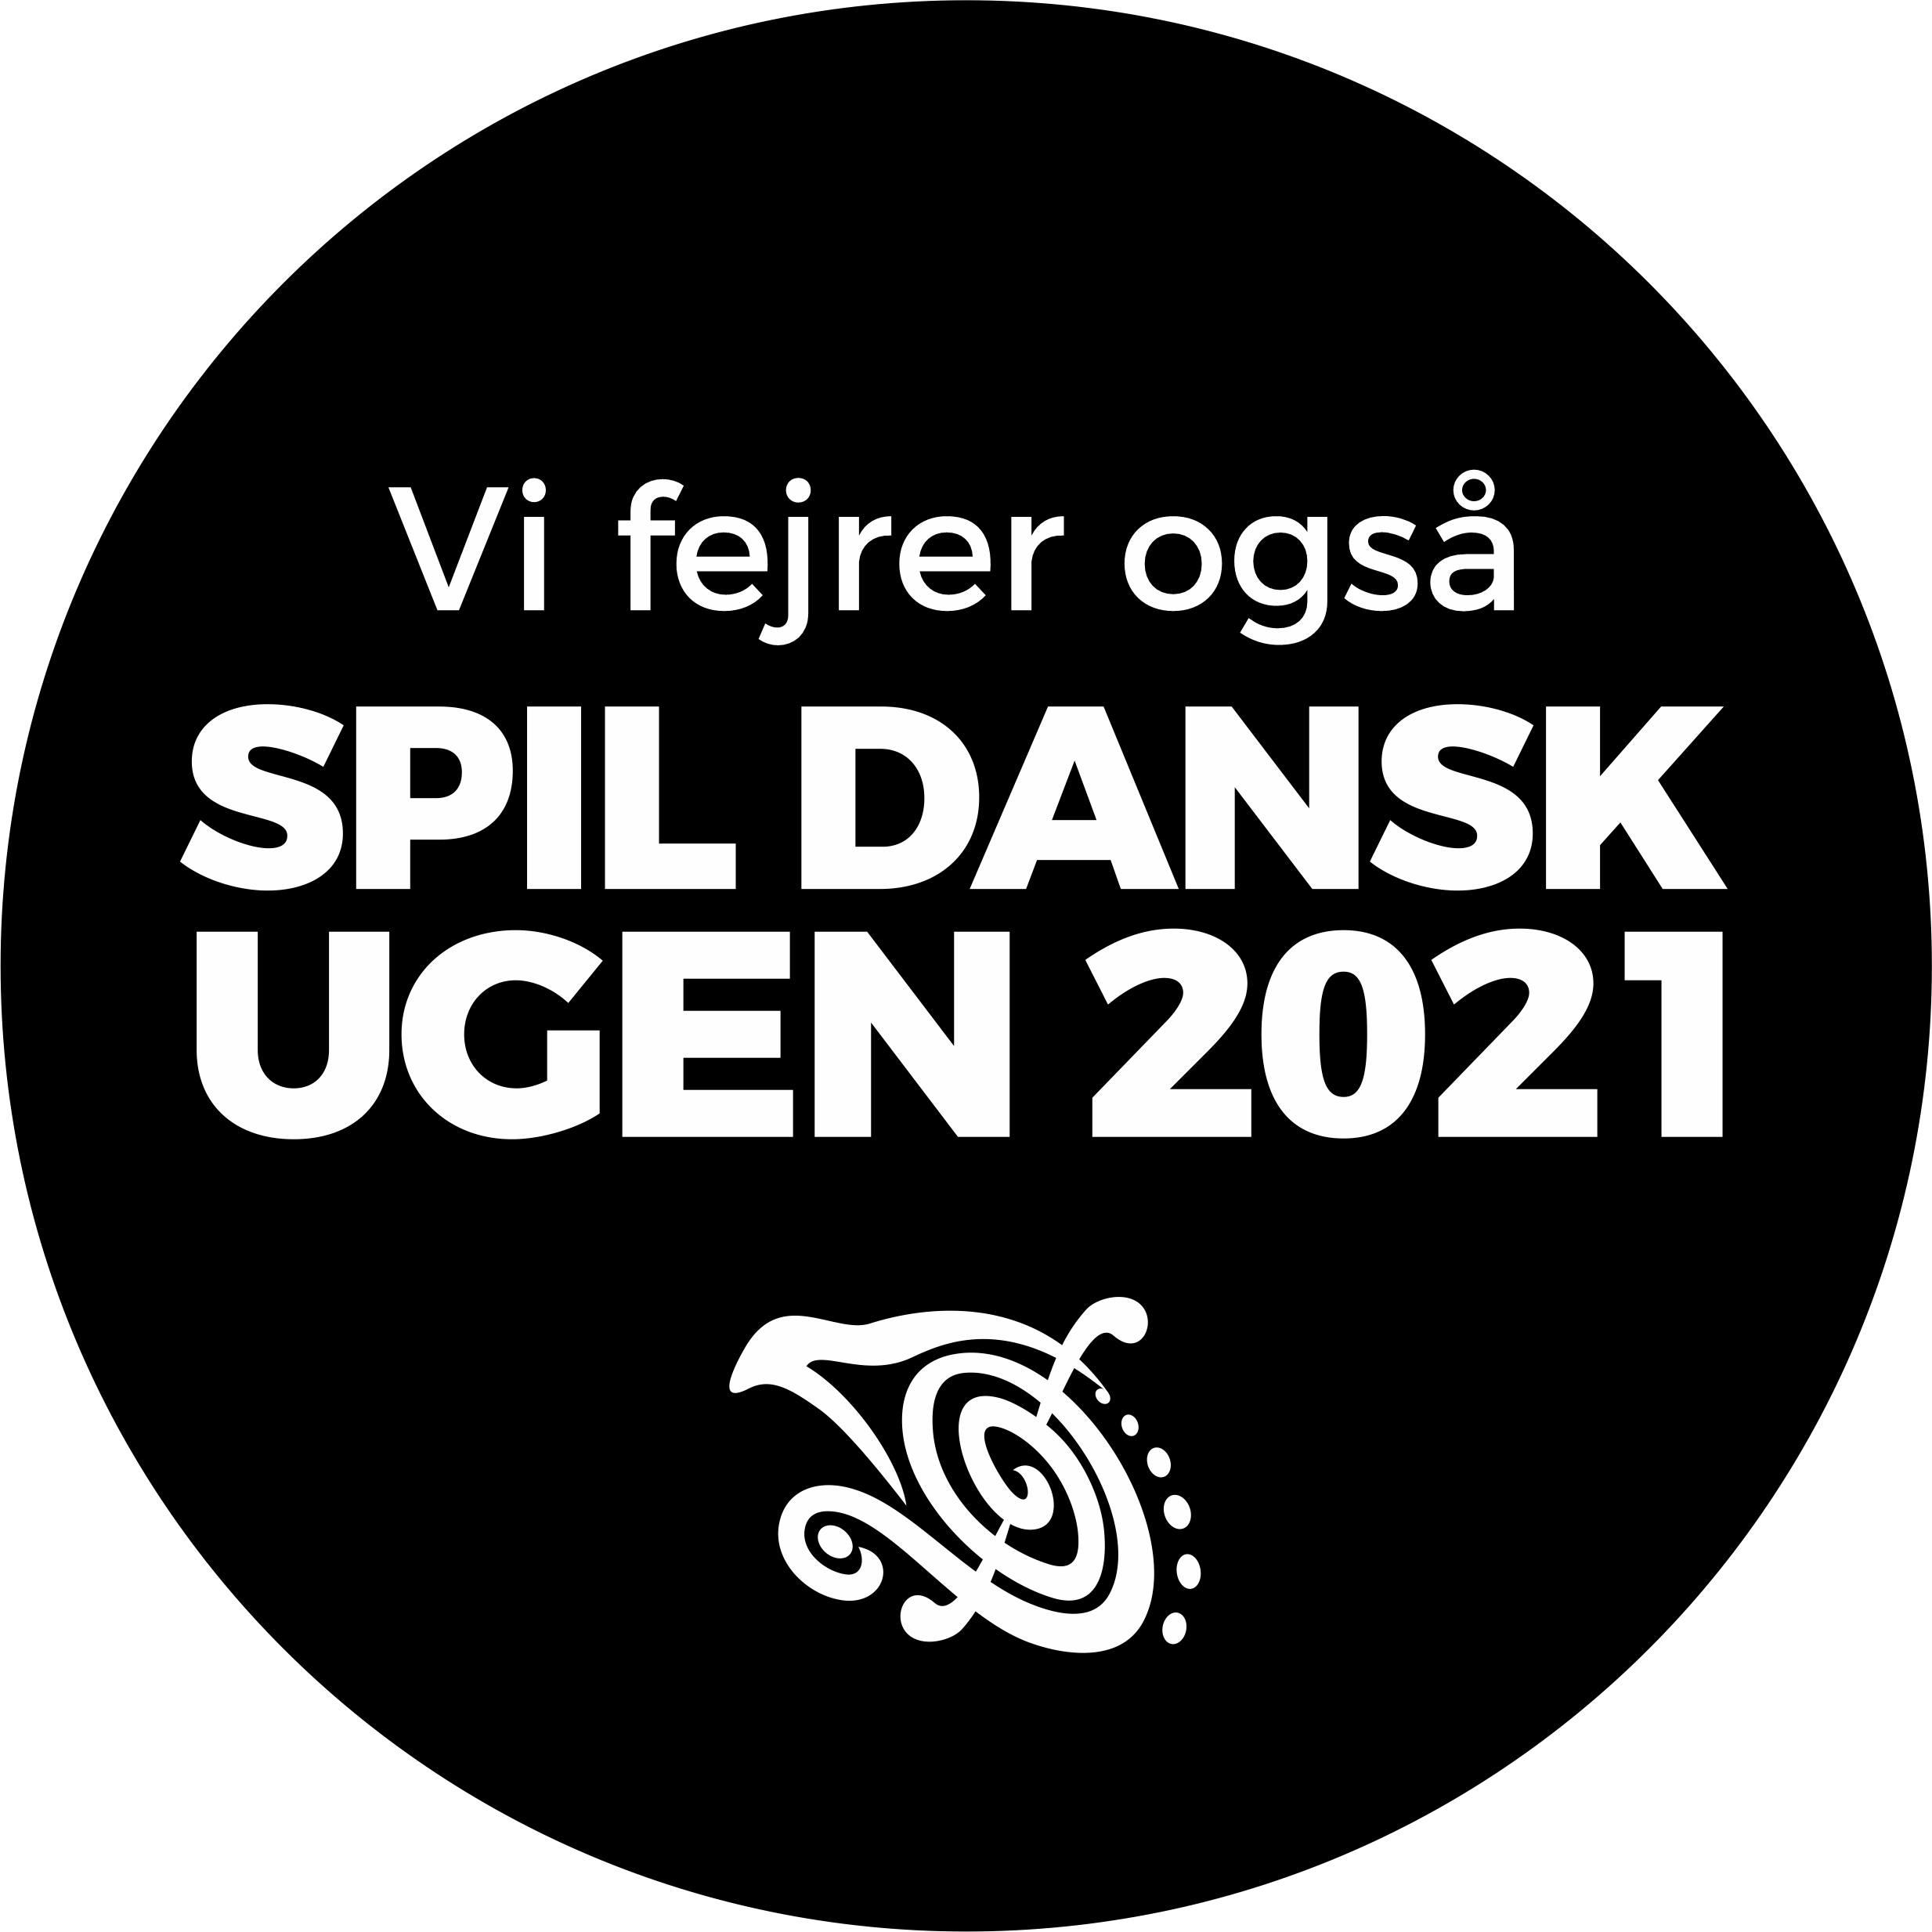 SPIL DANSK UGEN 2021 Vi fejrer ogsaa SORT